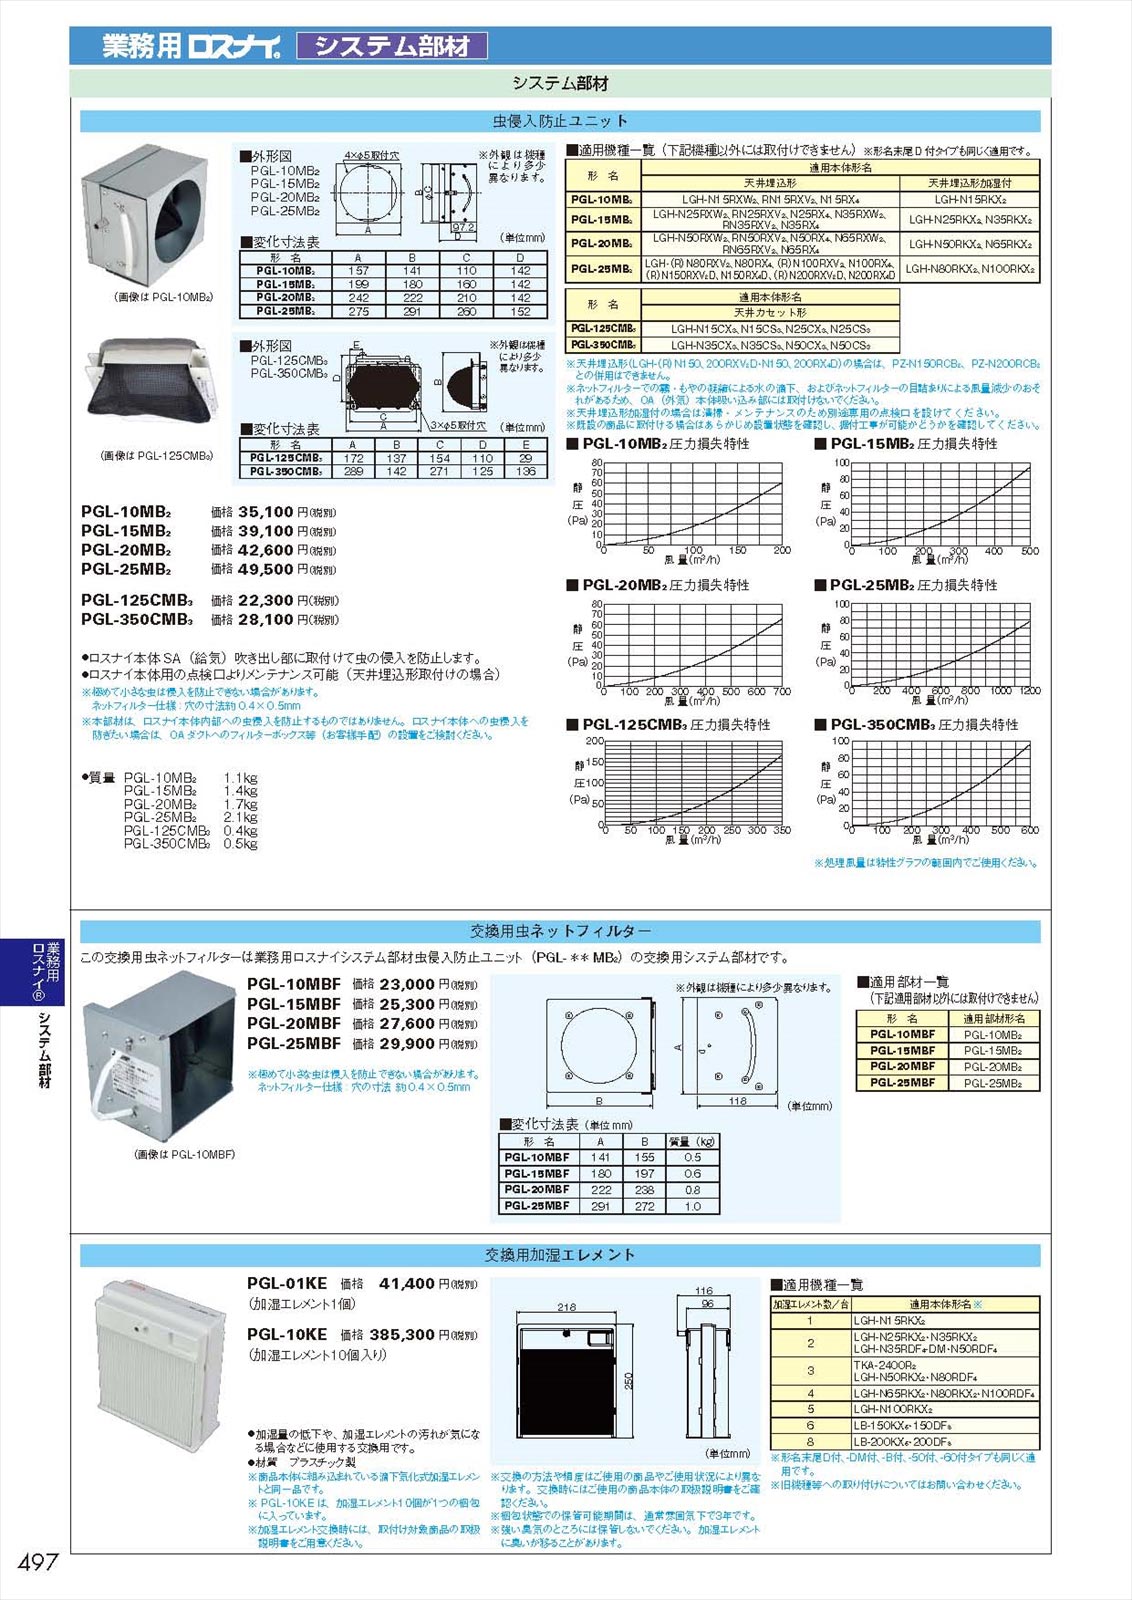 ファン 昭和電機 電動送風機 汎用シリーズ(0.04kW) SF50 - 5